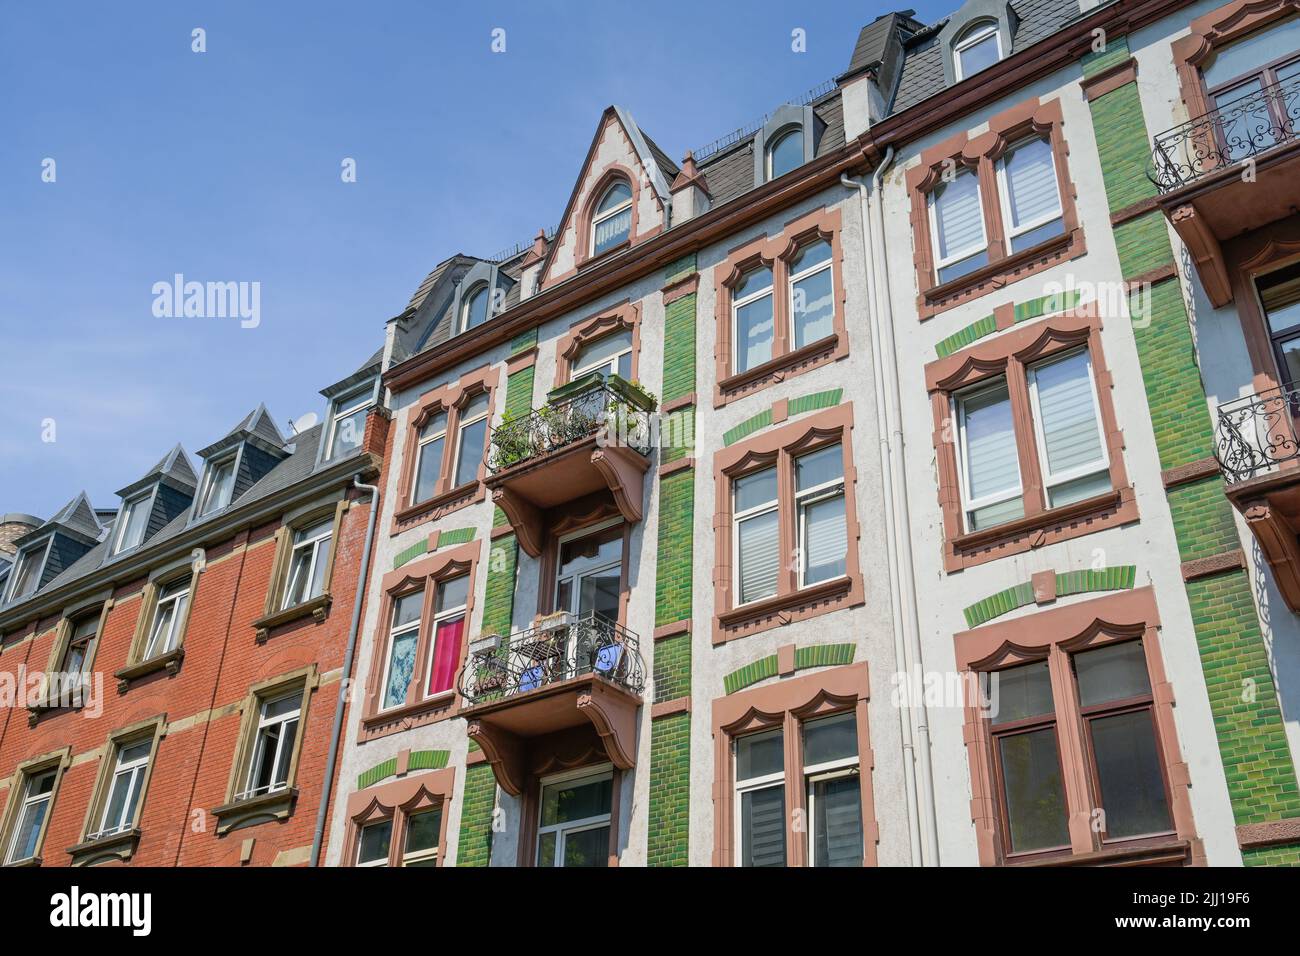 Altbauten, Fassaden, Hermann-Wendel-Straße, Westend, Frankfurt am Main, Hessen, Deutschland Stock Photo